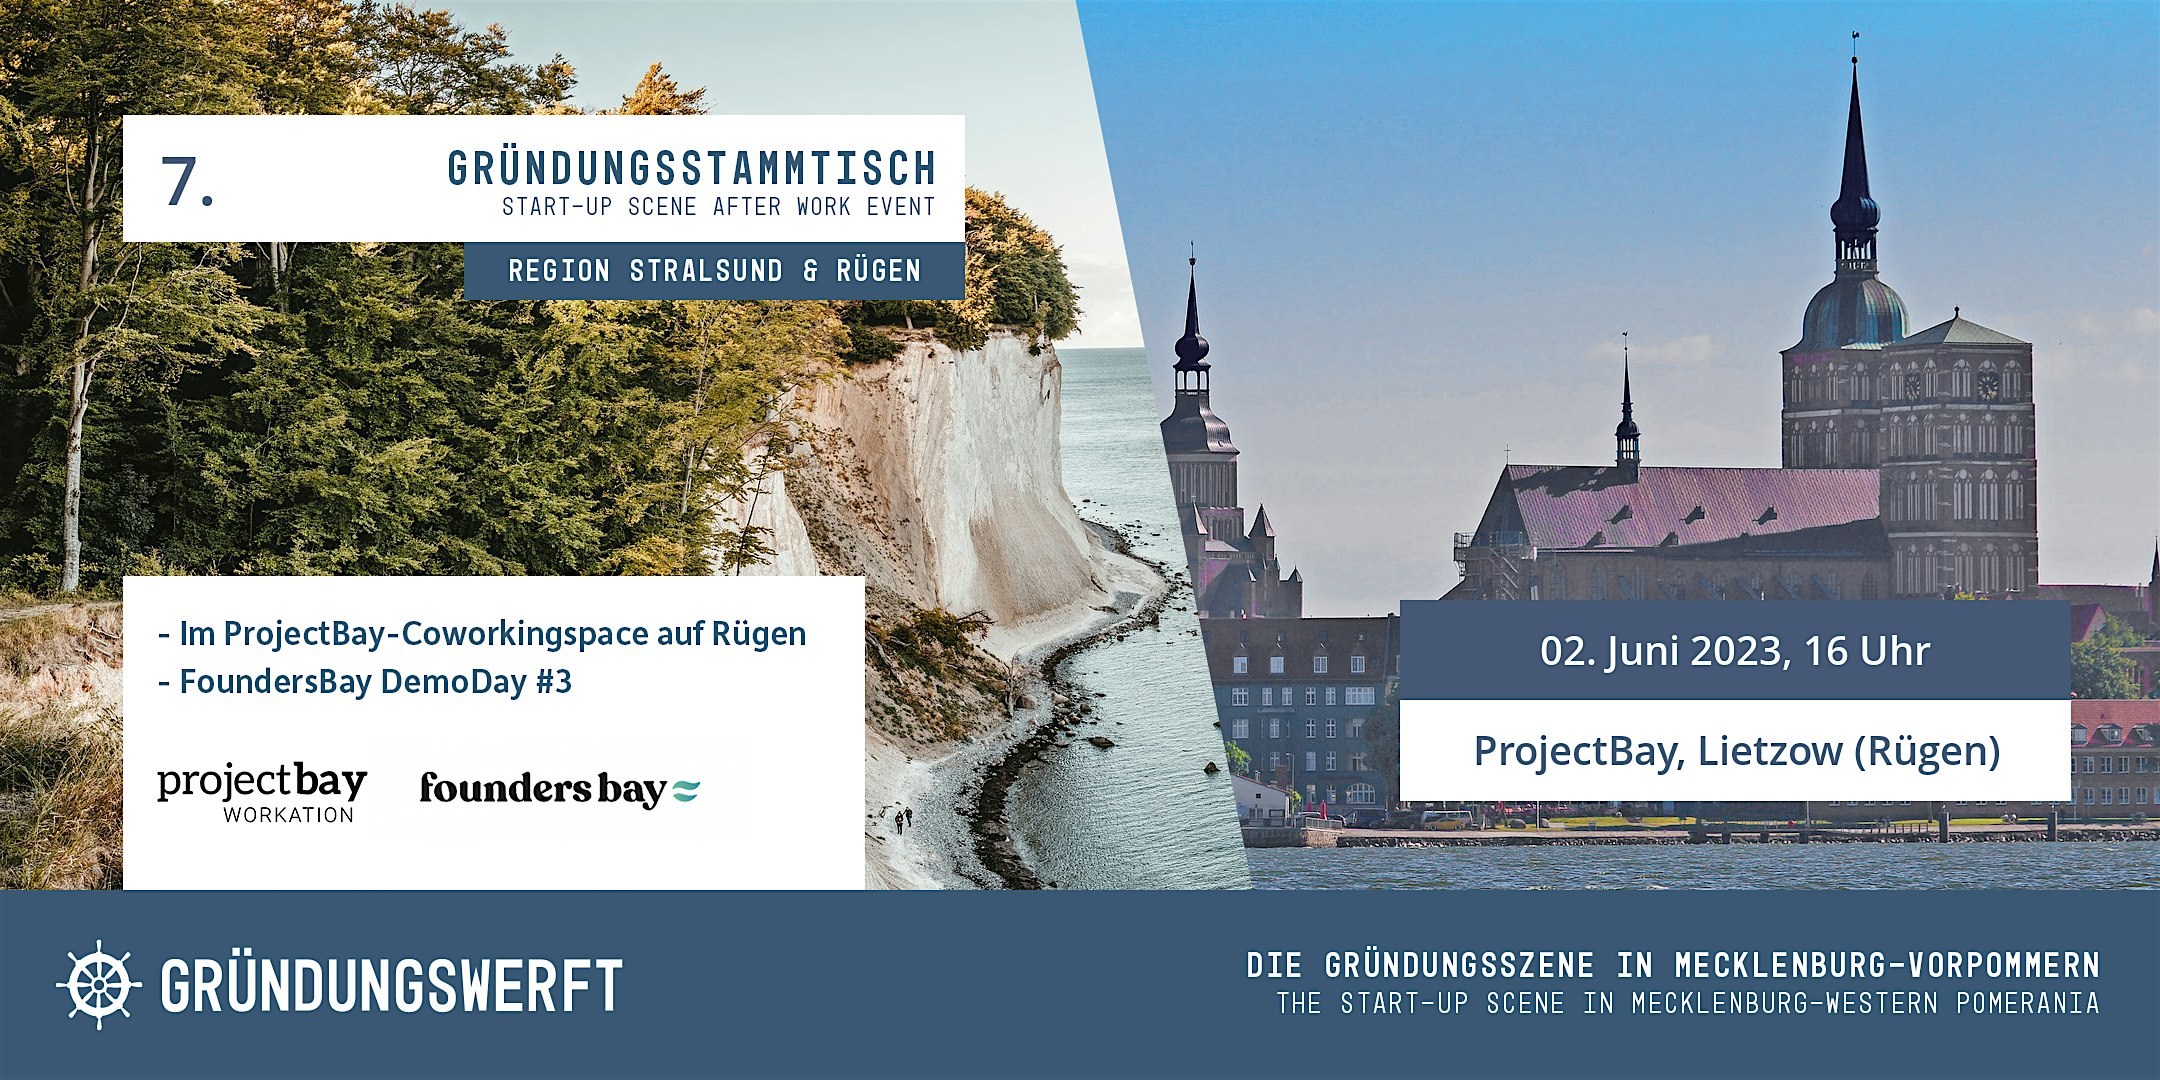 Veranstaltungsbild für die Veranstaltung 7. Gründungsstammtisch Rügen & Stralsund bei ProjectBay+DemoDay Foundersbay